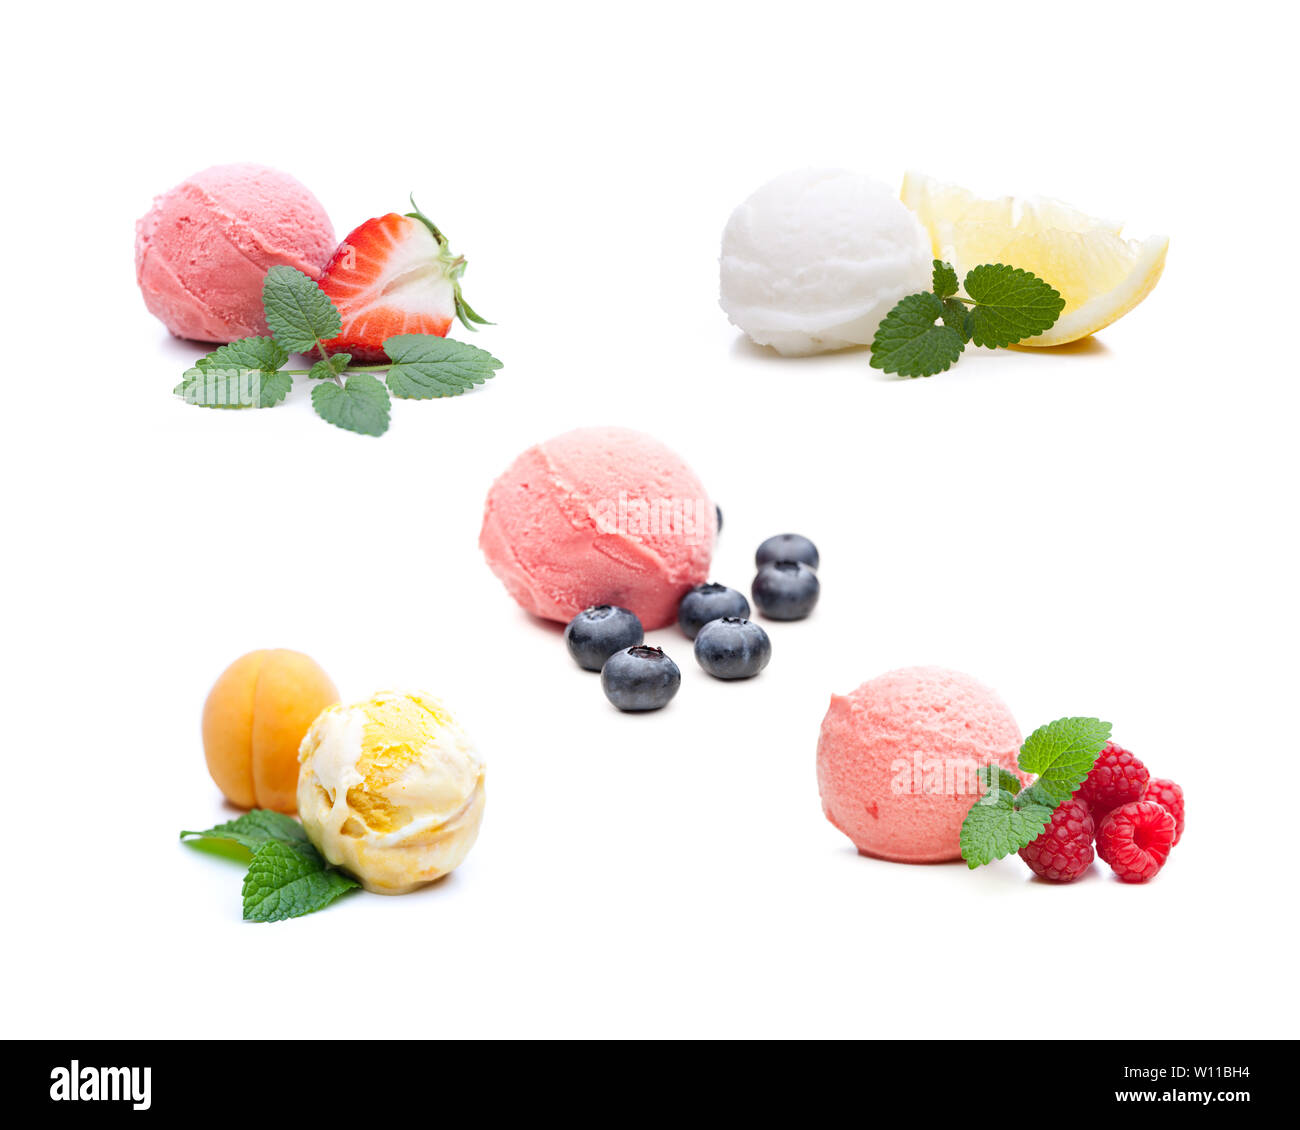 Différentes mesures de la crème glacée aux fruits. Véritable crème glacée comestibles - aucun ingrédient artificiel utilisé Banque D'Images